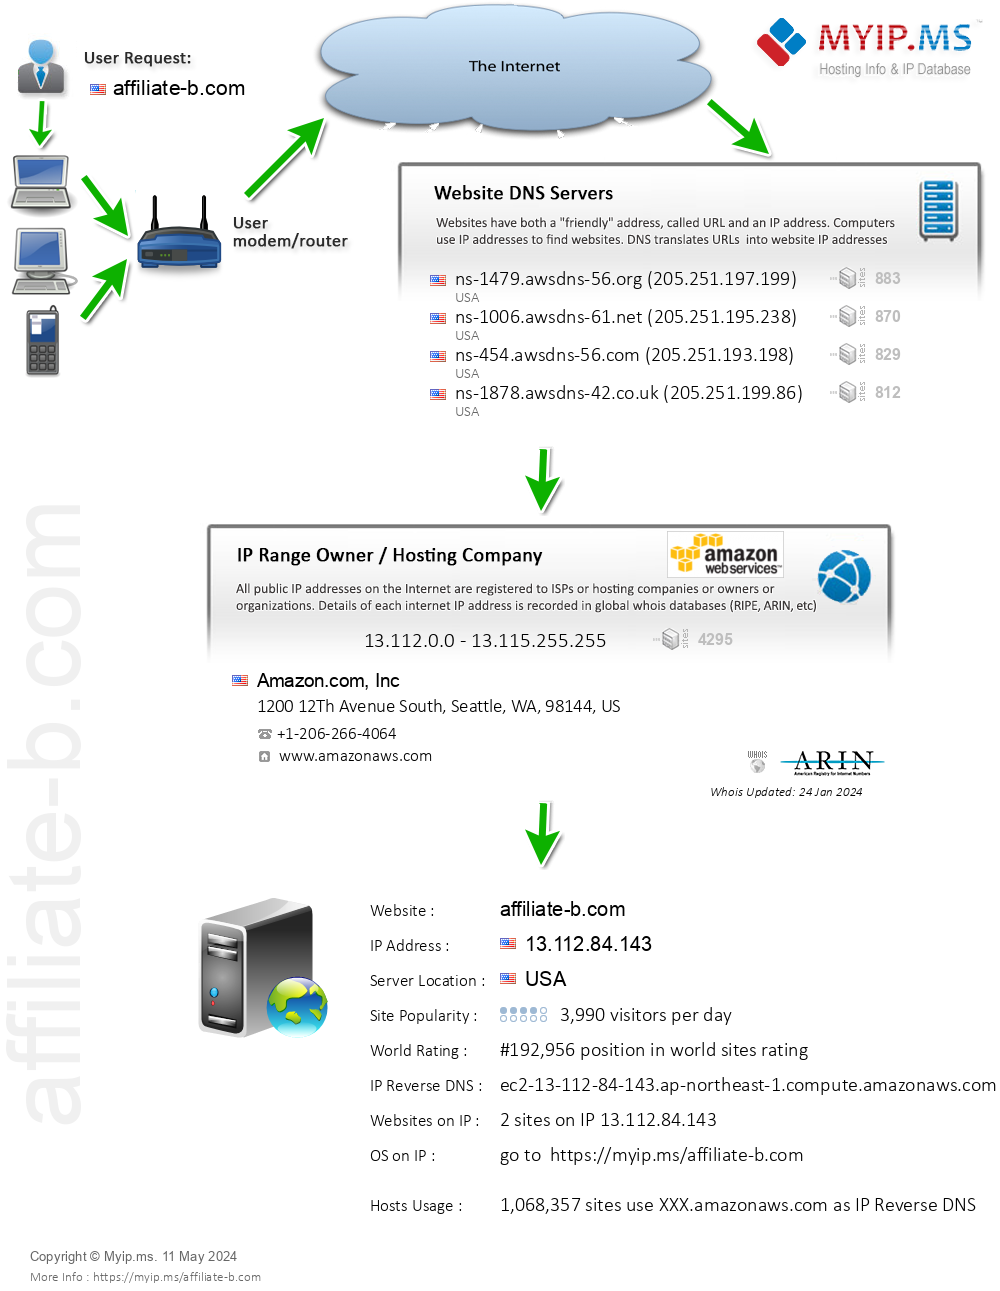 Affiliate-b.com - Website Hosting Visual IP Diagram